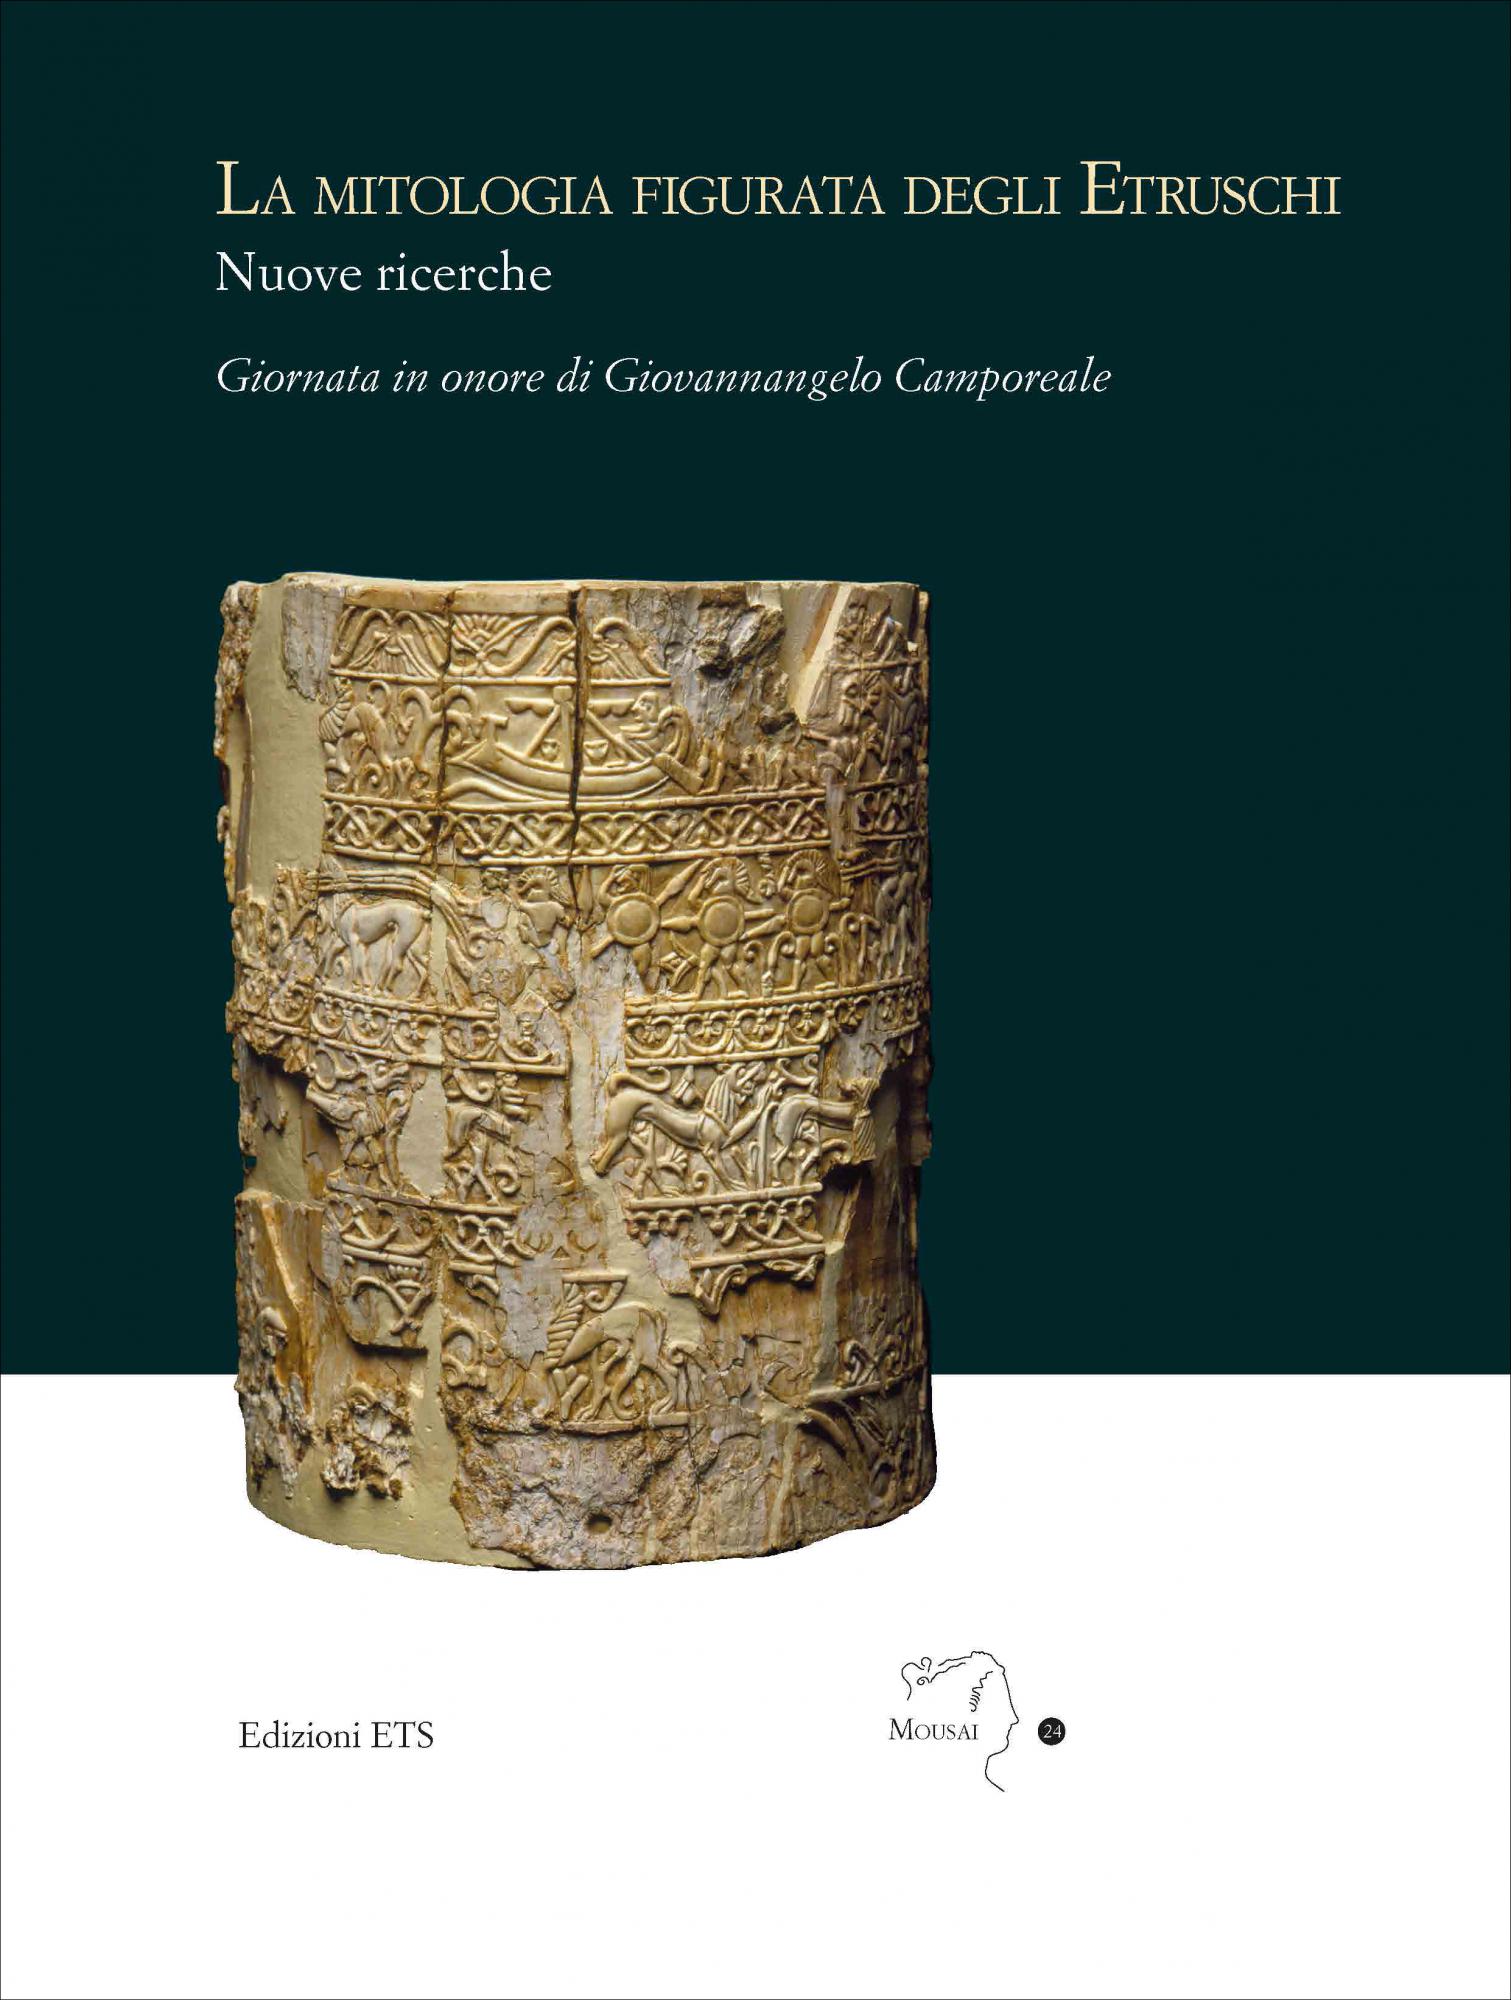 La mitologia figurata degli Etruschi. Nuove ricerche.Giornata in onore di Giovannangelo Camporeale Massa Marittima, 21 settembre 2019